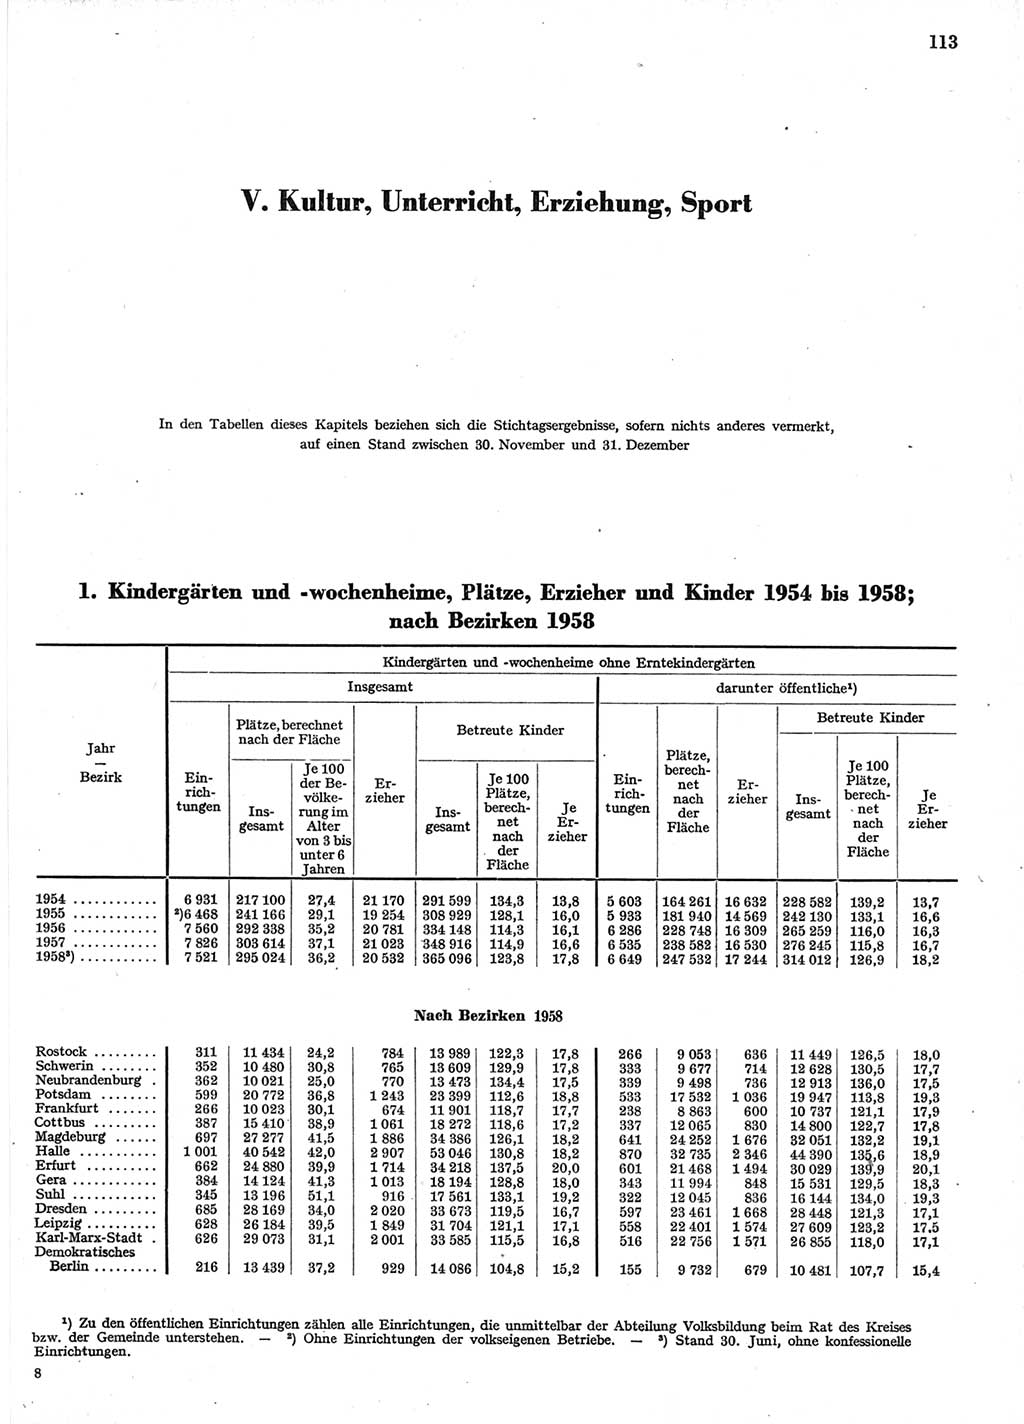 Statistisches Jahrbuch der Deutschen Demokratischen Republik (DDR) 1958, Seite 113 (Stat. Jb. DDR 1958, S. 113)